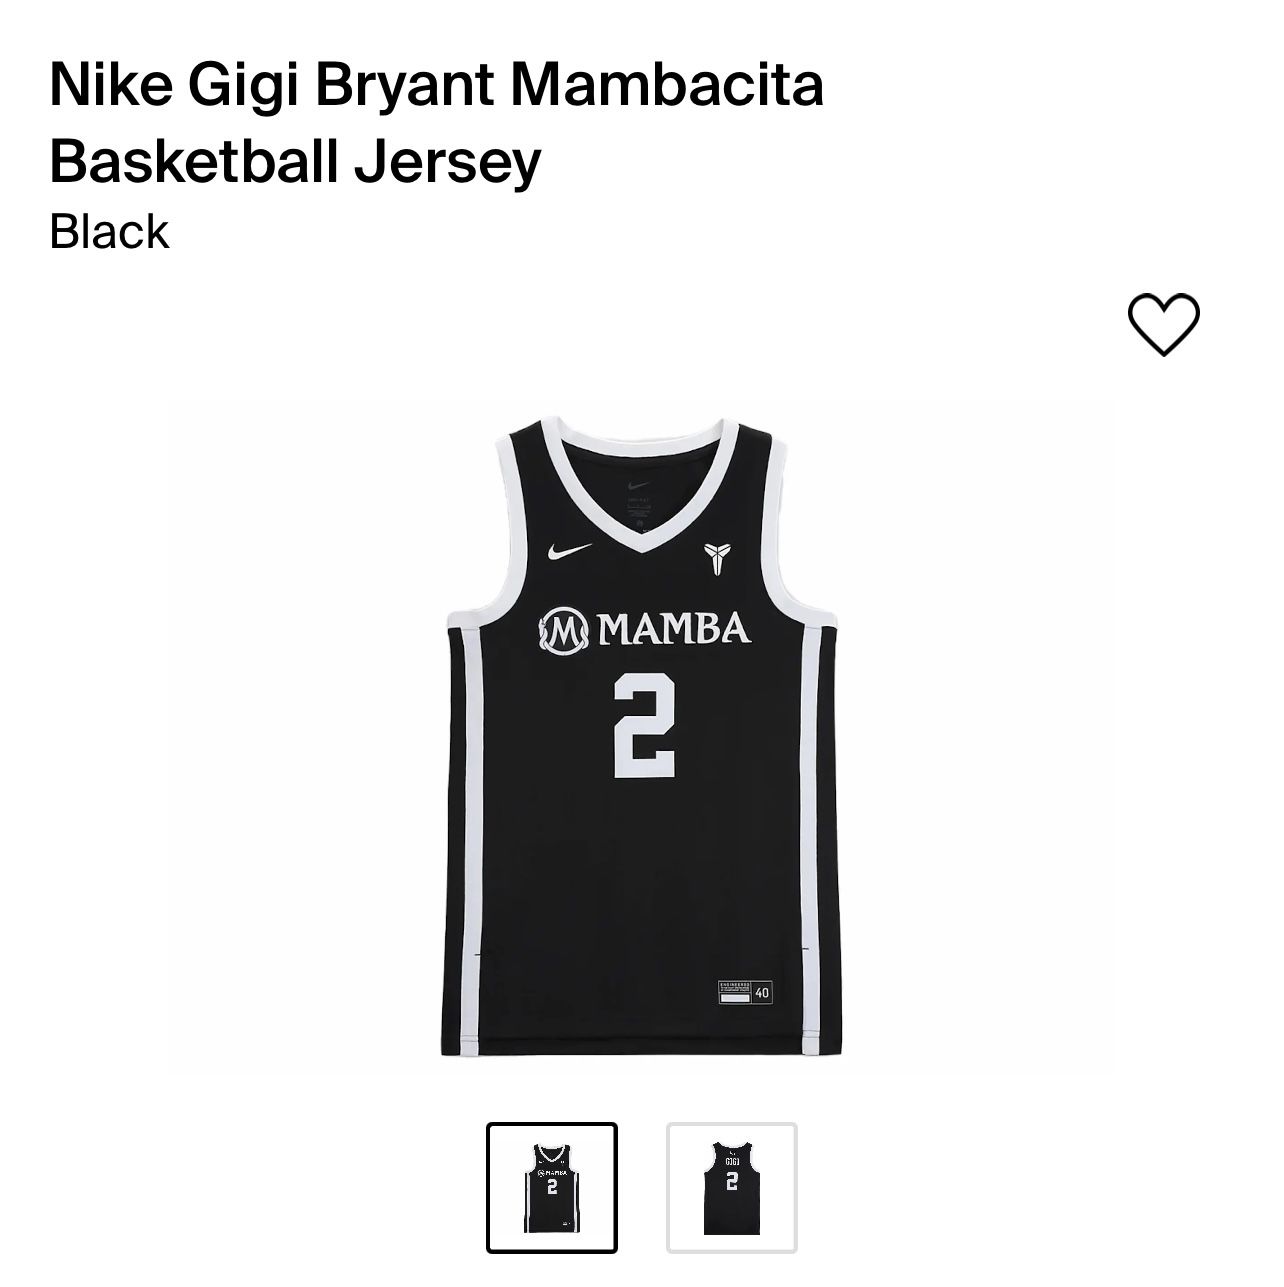 Nike Gigi Bryant Mambacita Basketball Jersey (Black XL)